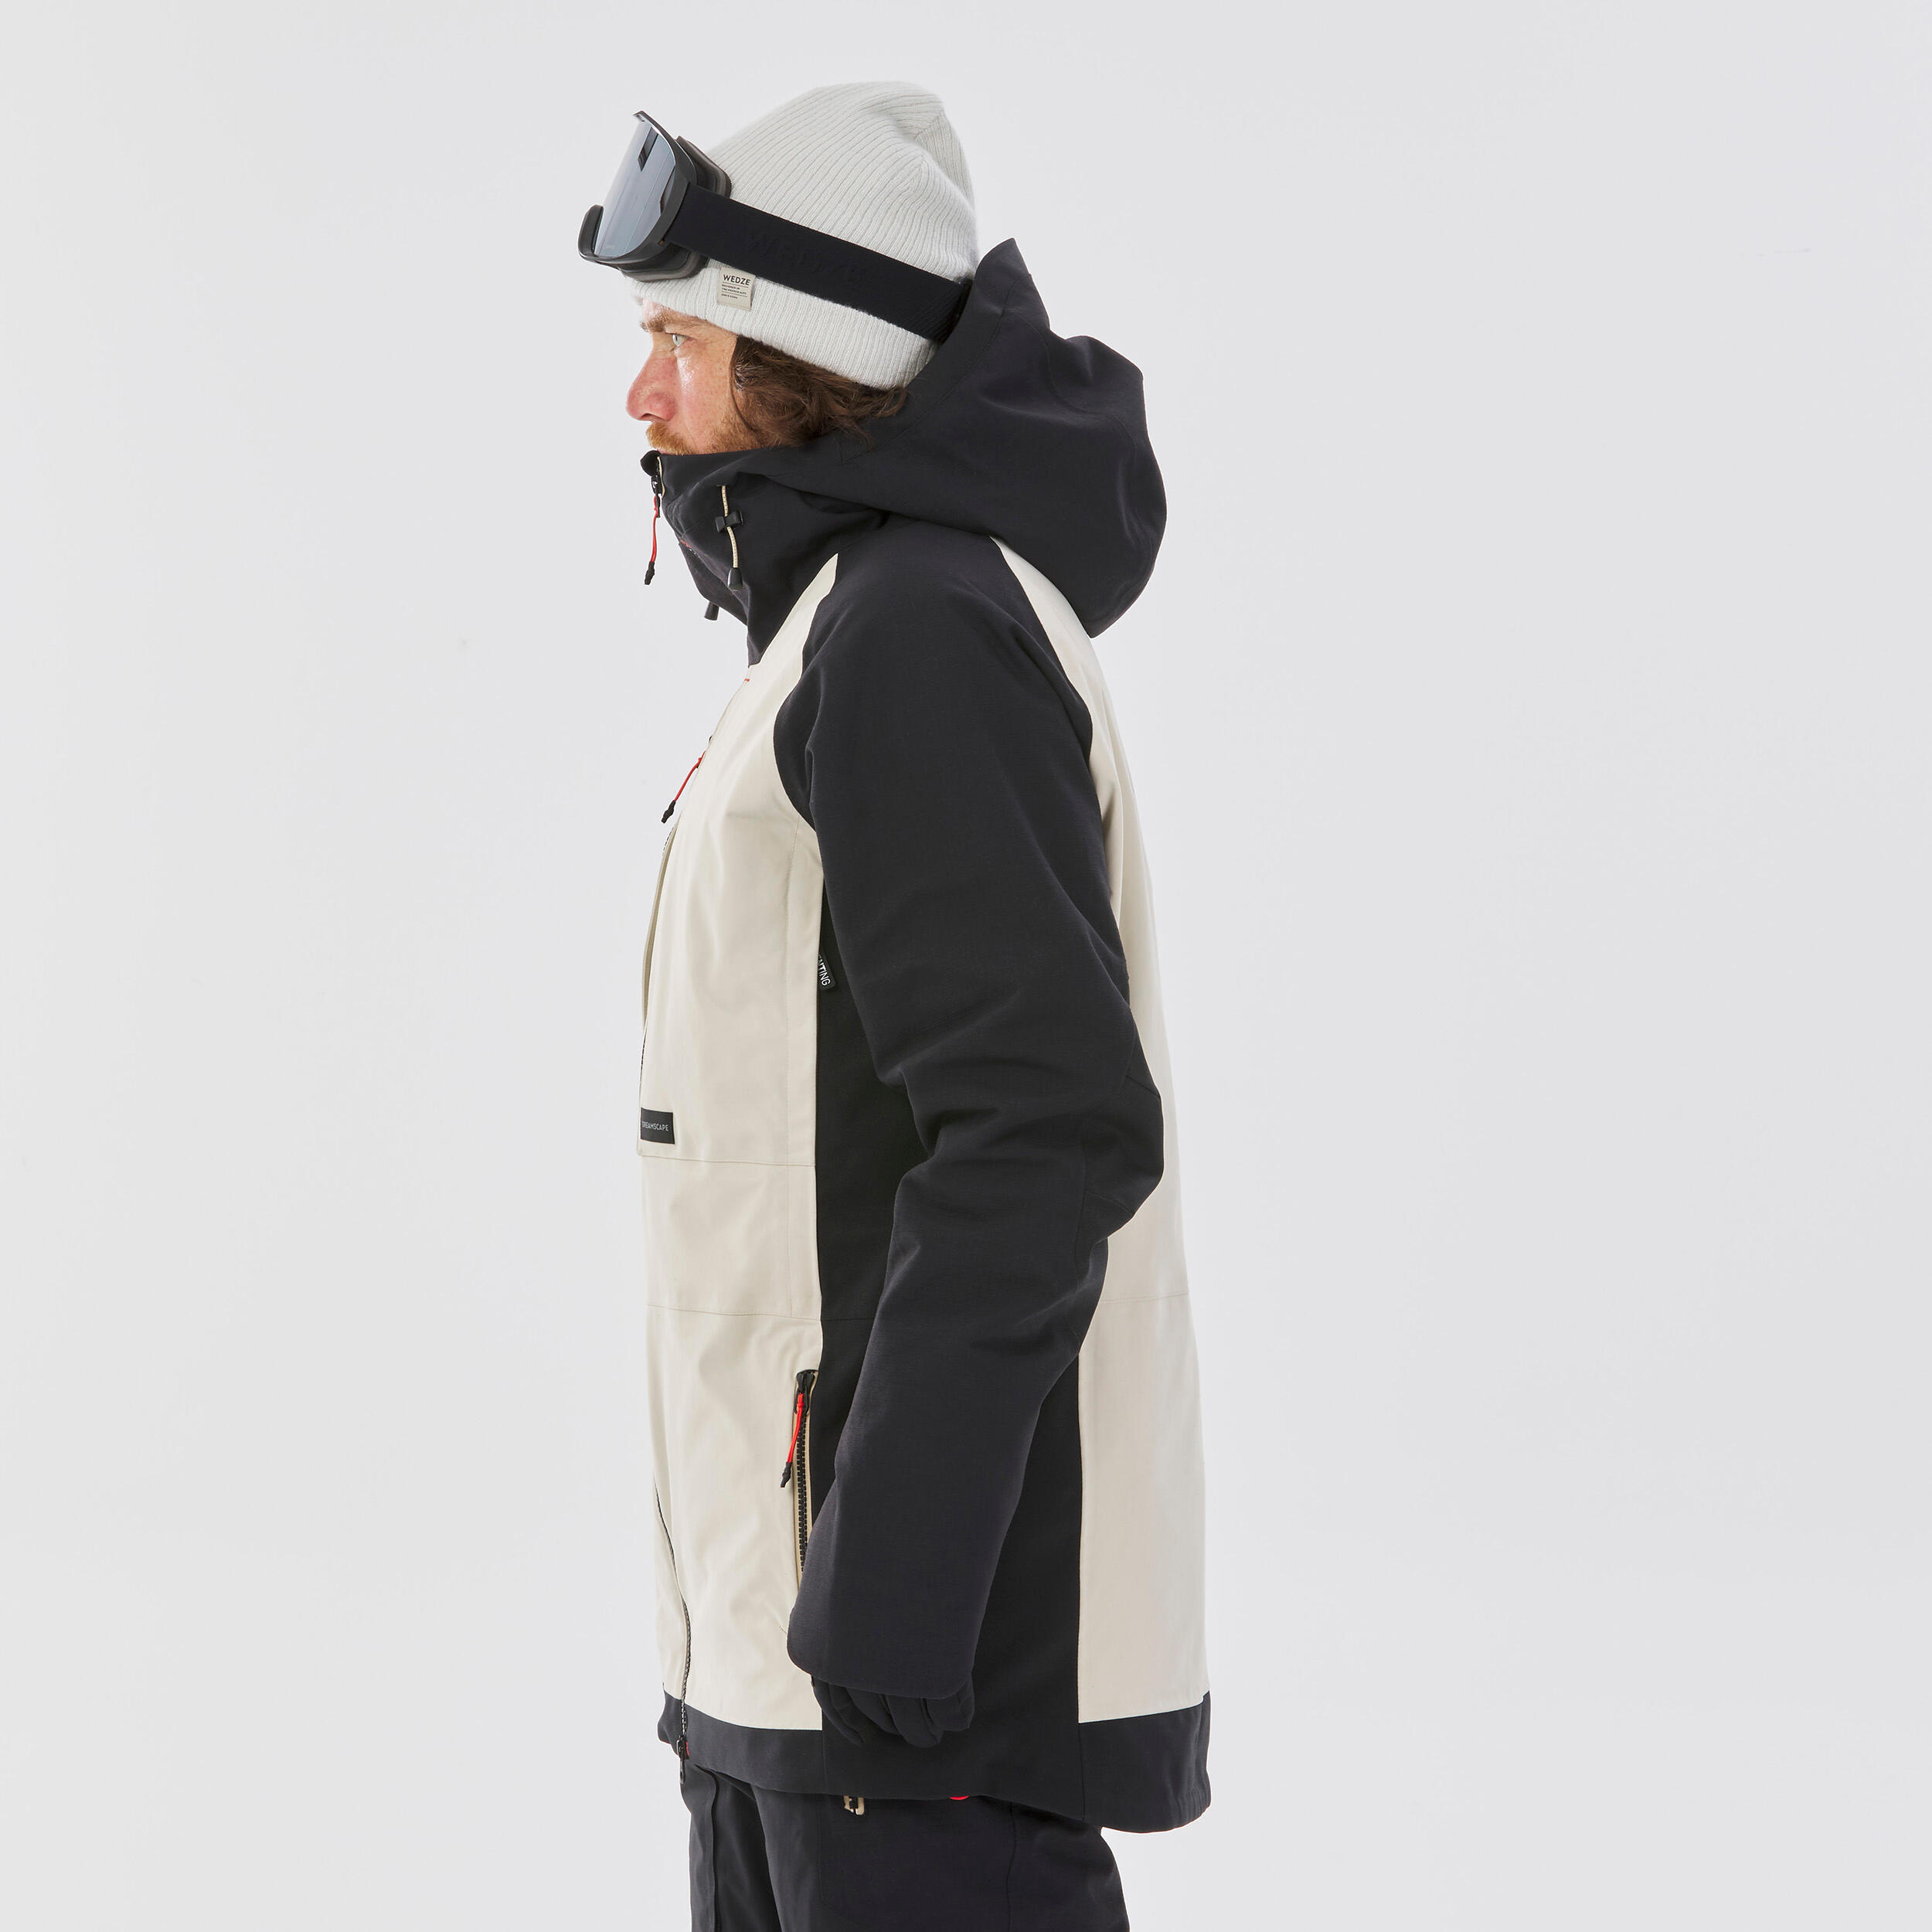 Men's Ultra Resistant Snowboard Jacket -  SNB 900 UP Beige 5/18